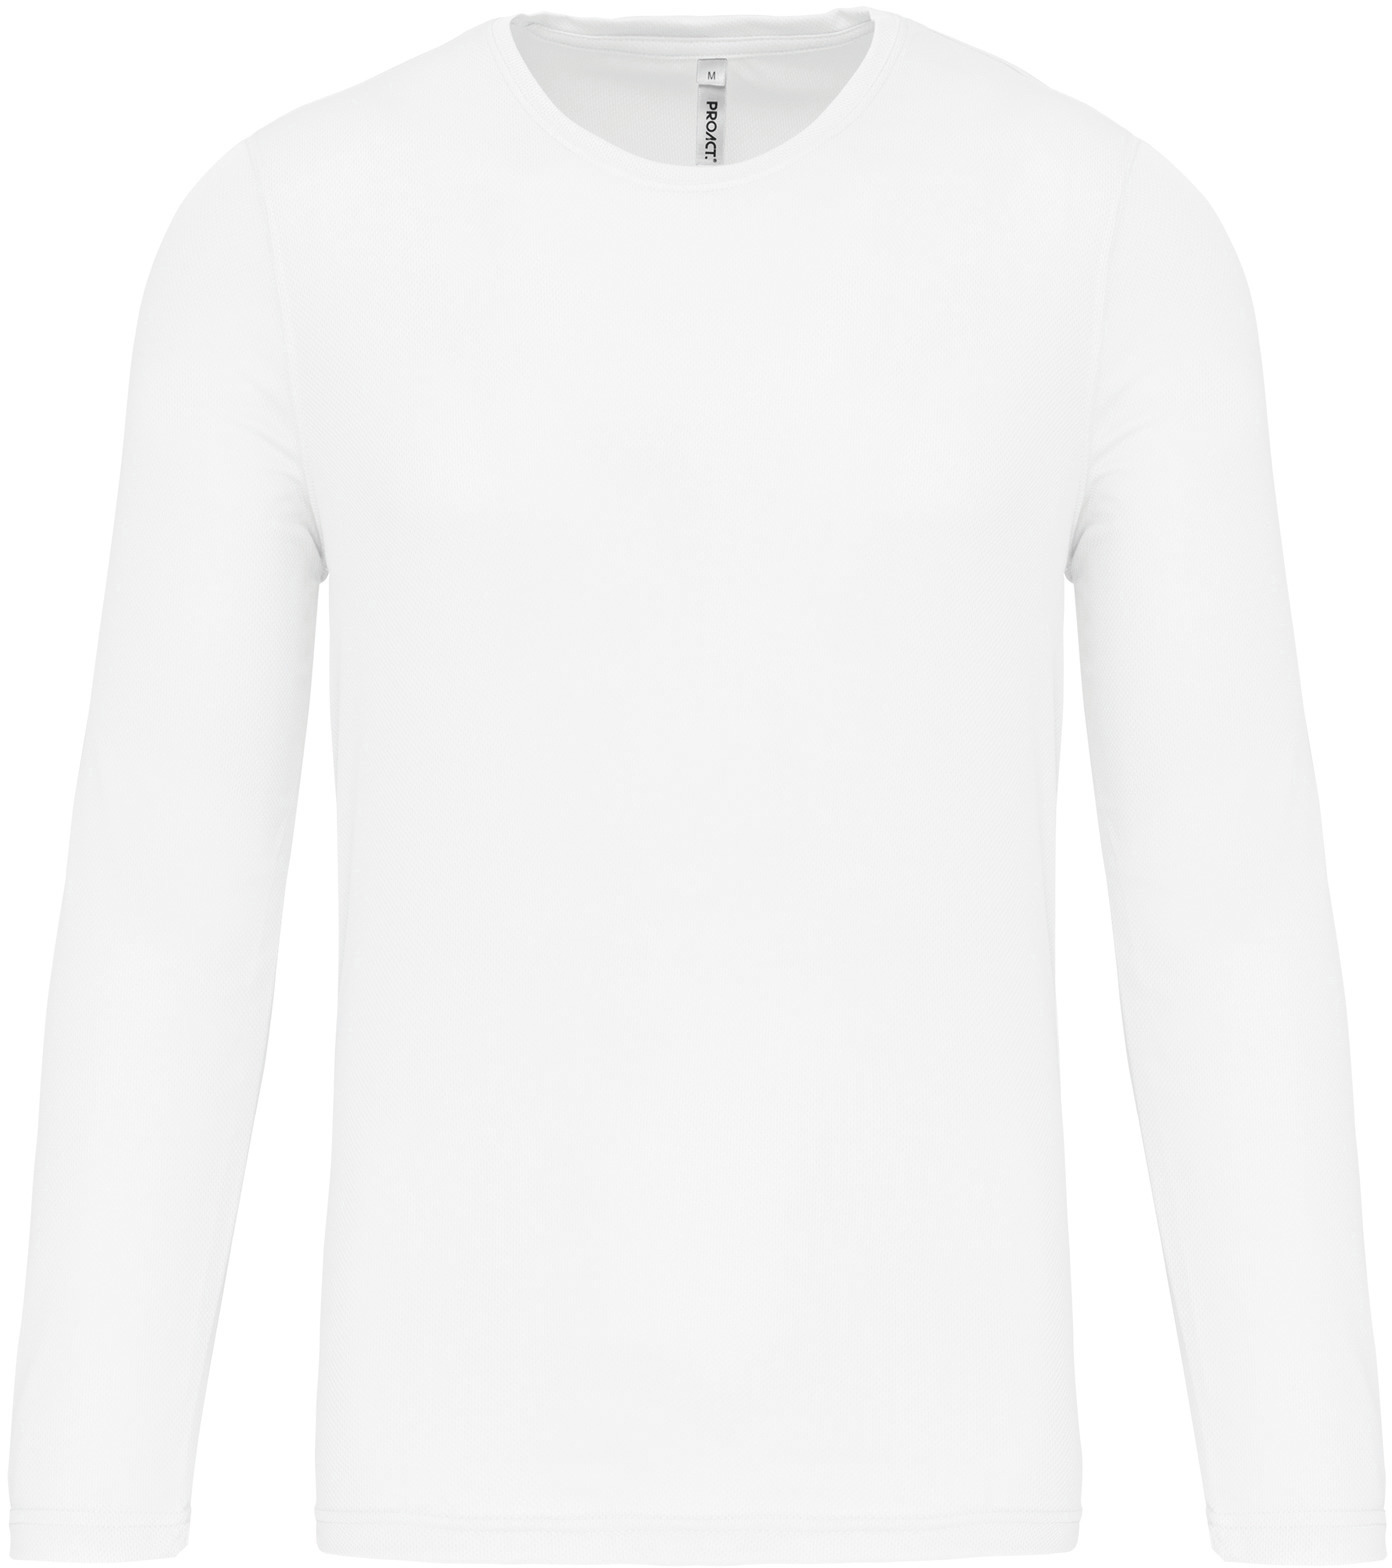 Pánské sportovní tričko dlouhý rukáv PA443 Barva: bílá, Velikost: S